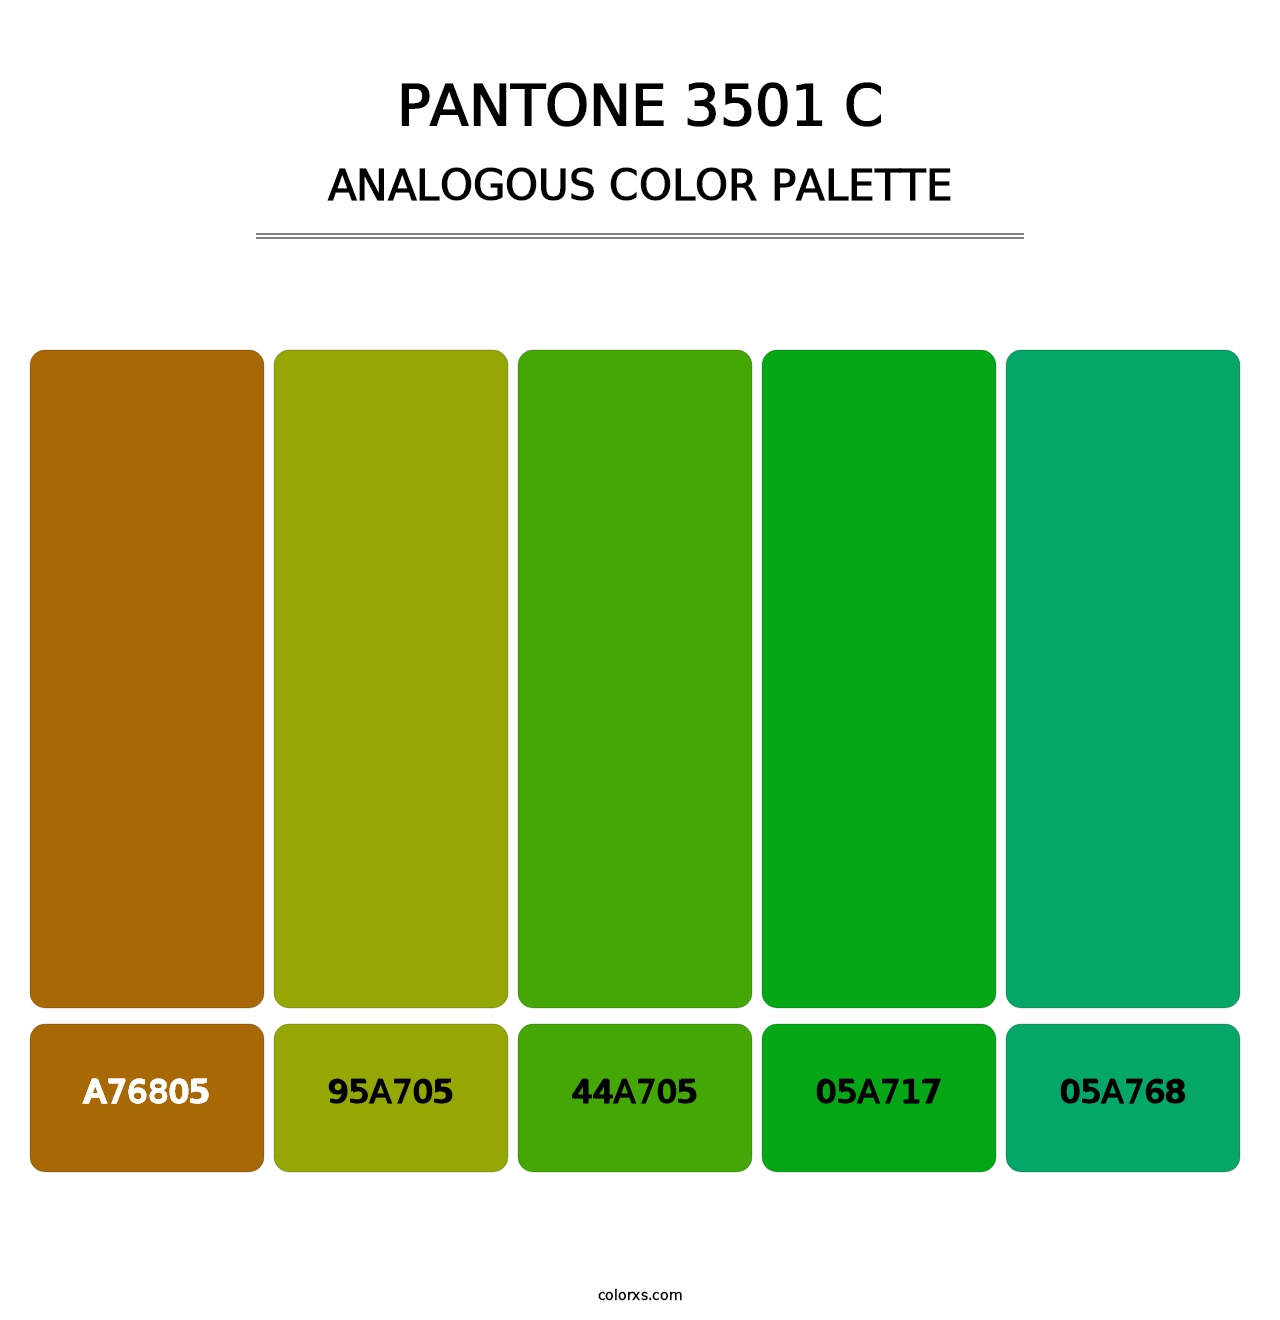 PANTONE 3501 C - Analogous Color Palette